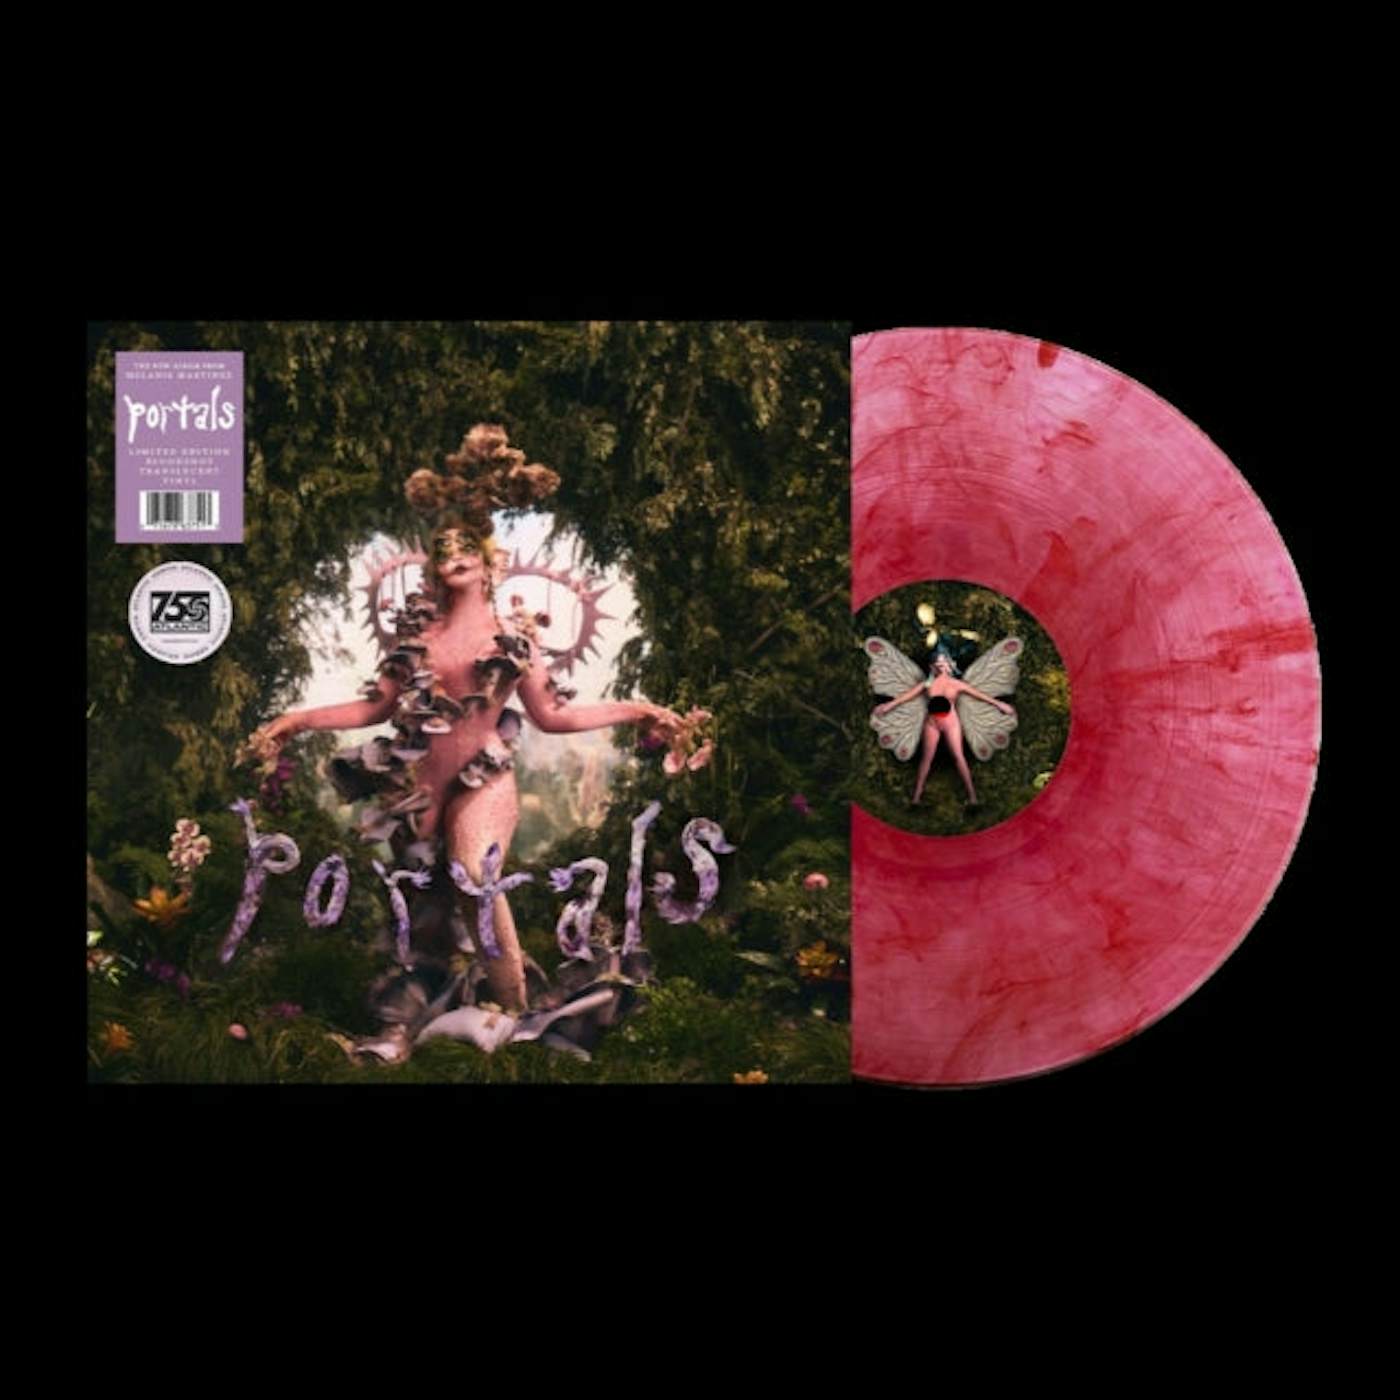 Melanie Martinez LP - Portals (Bloodshot Translucent Vinyl)